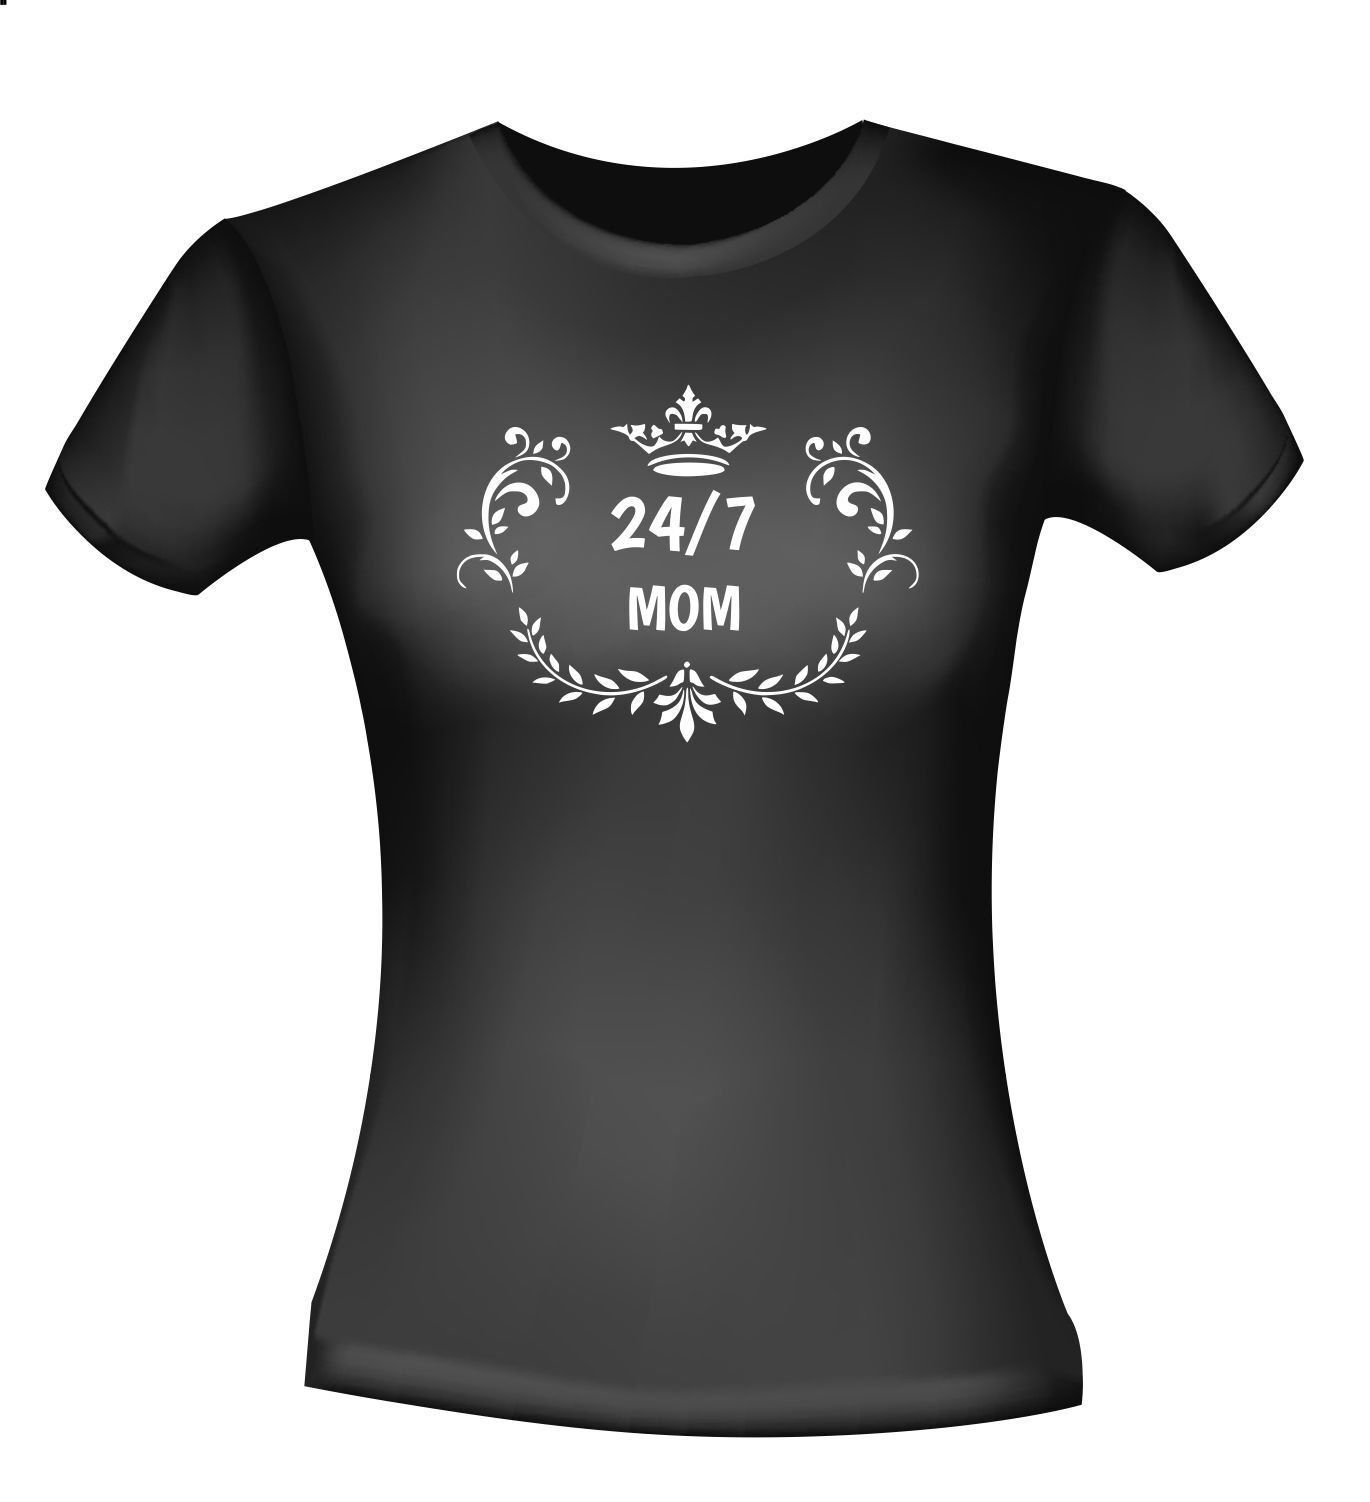 Twenty for seven mom t-shirt